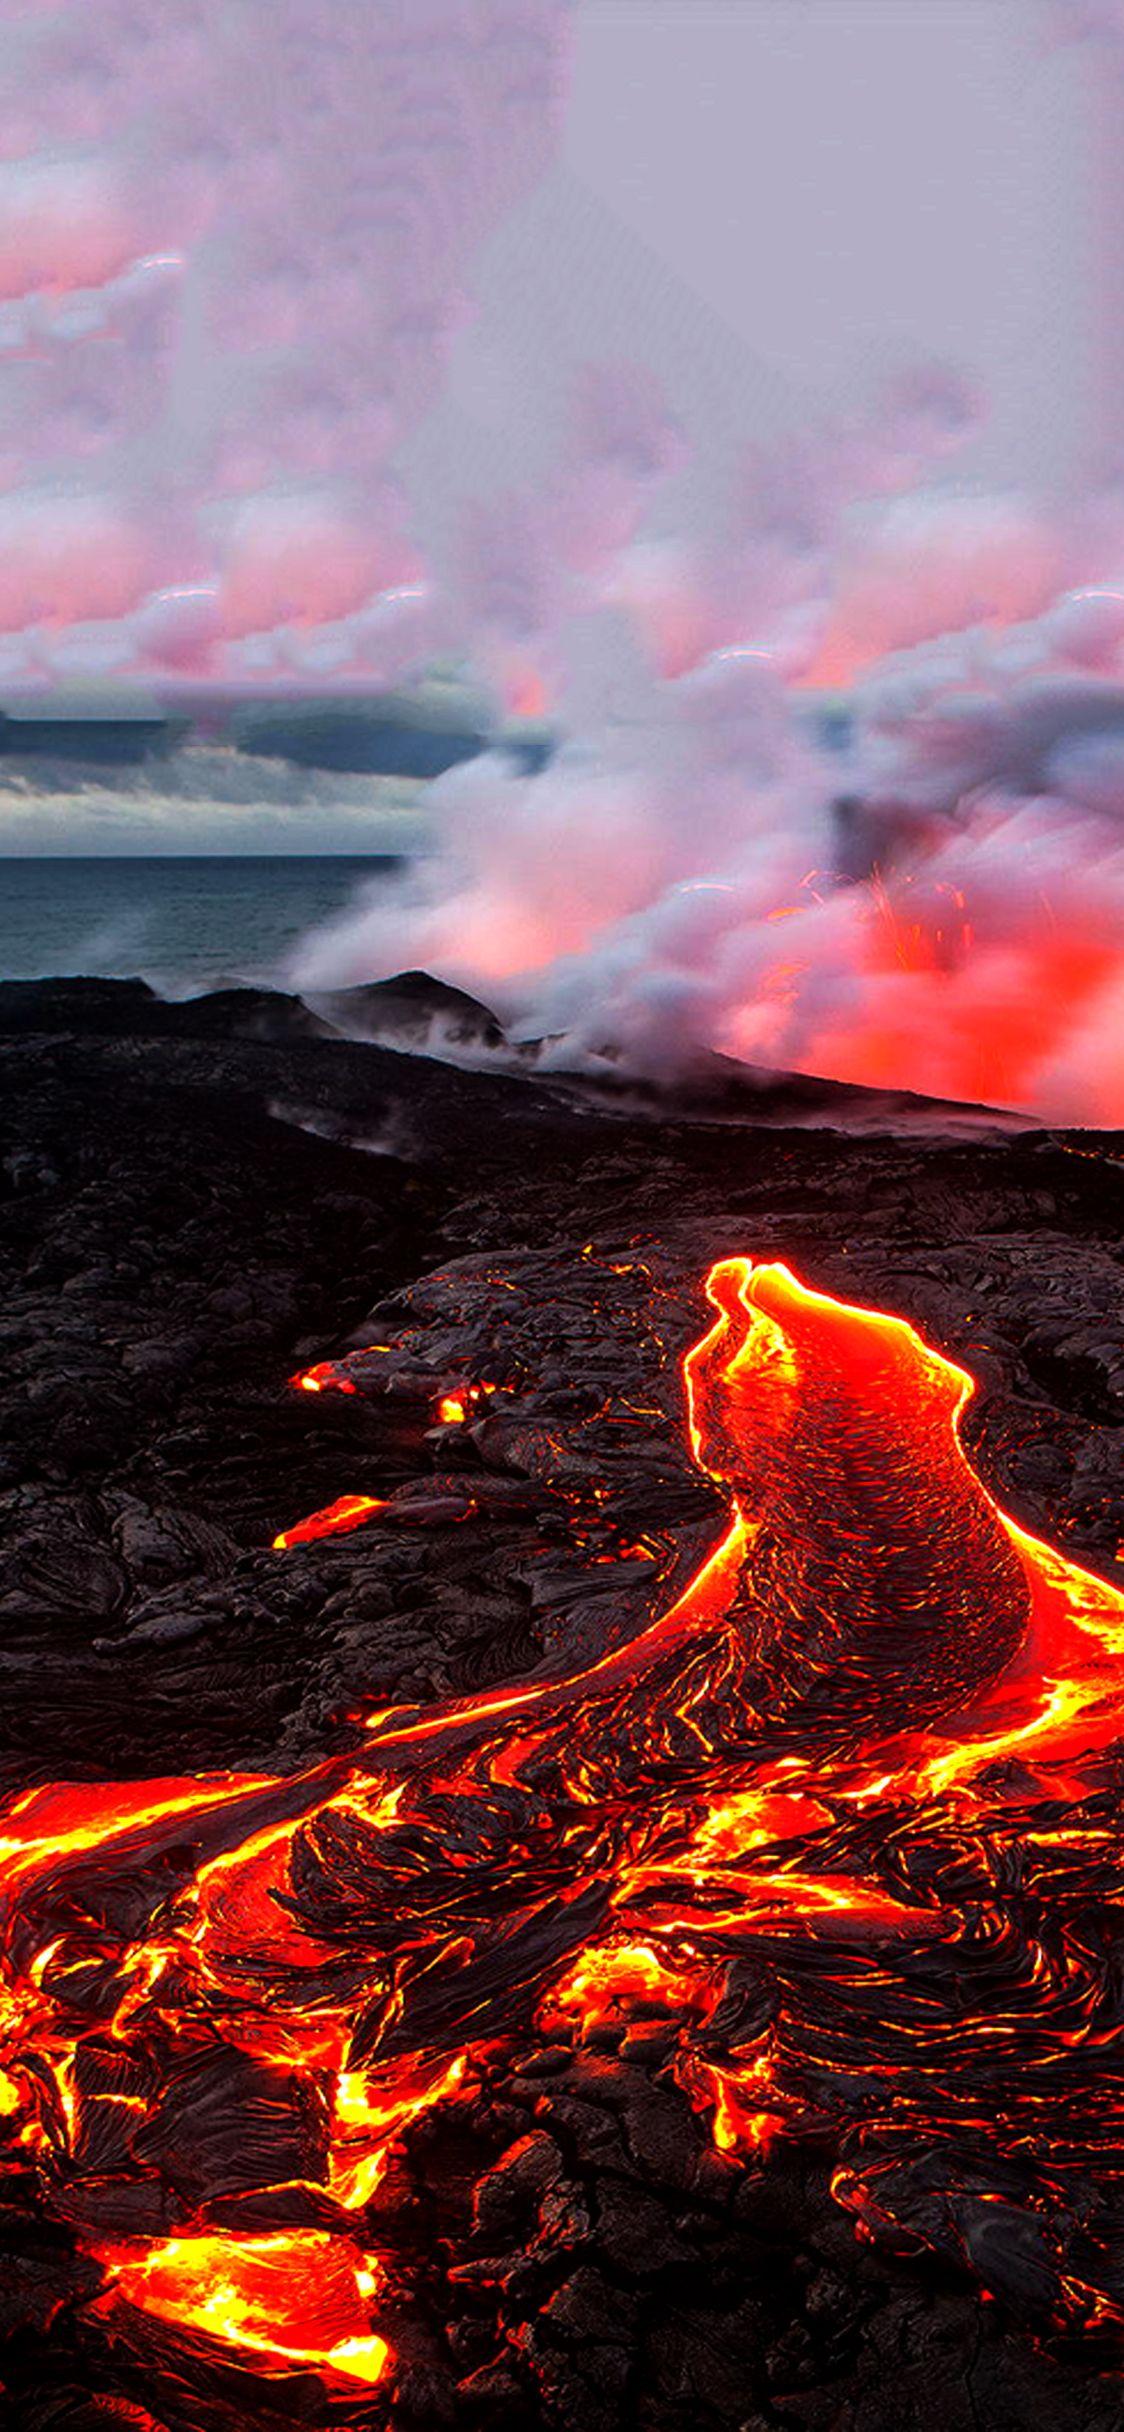 Best volcano wallpaper for iPhone x